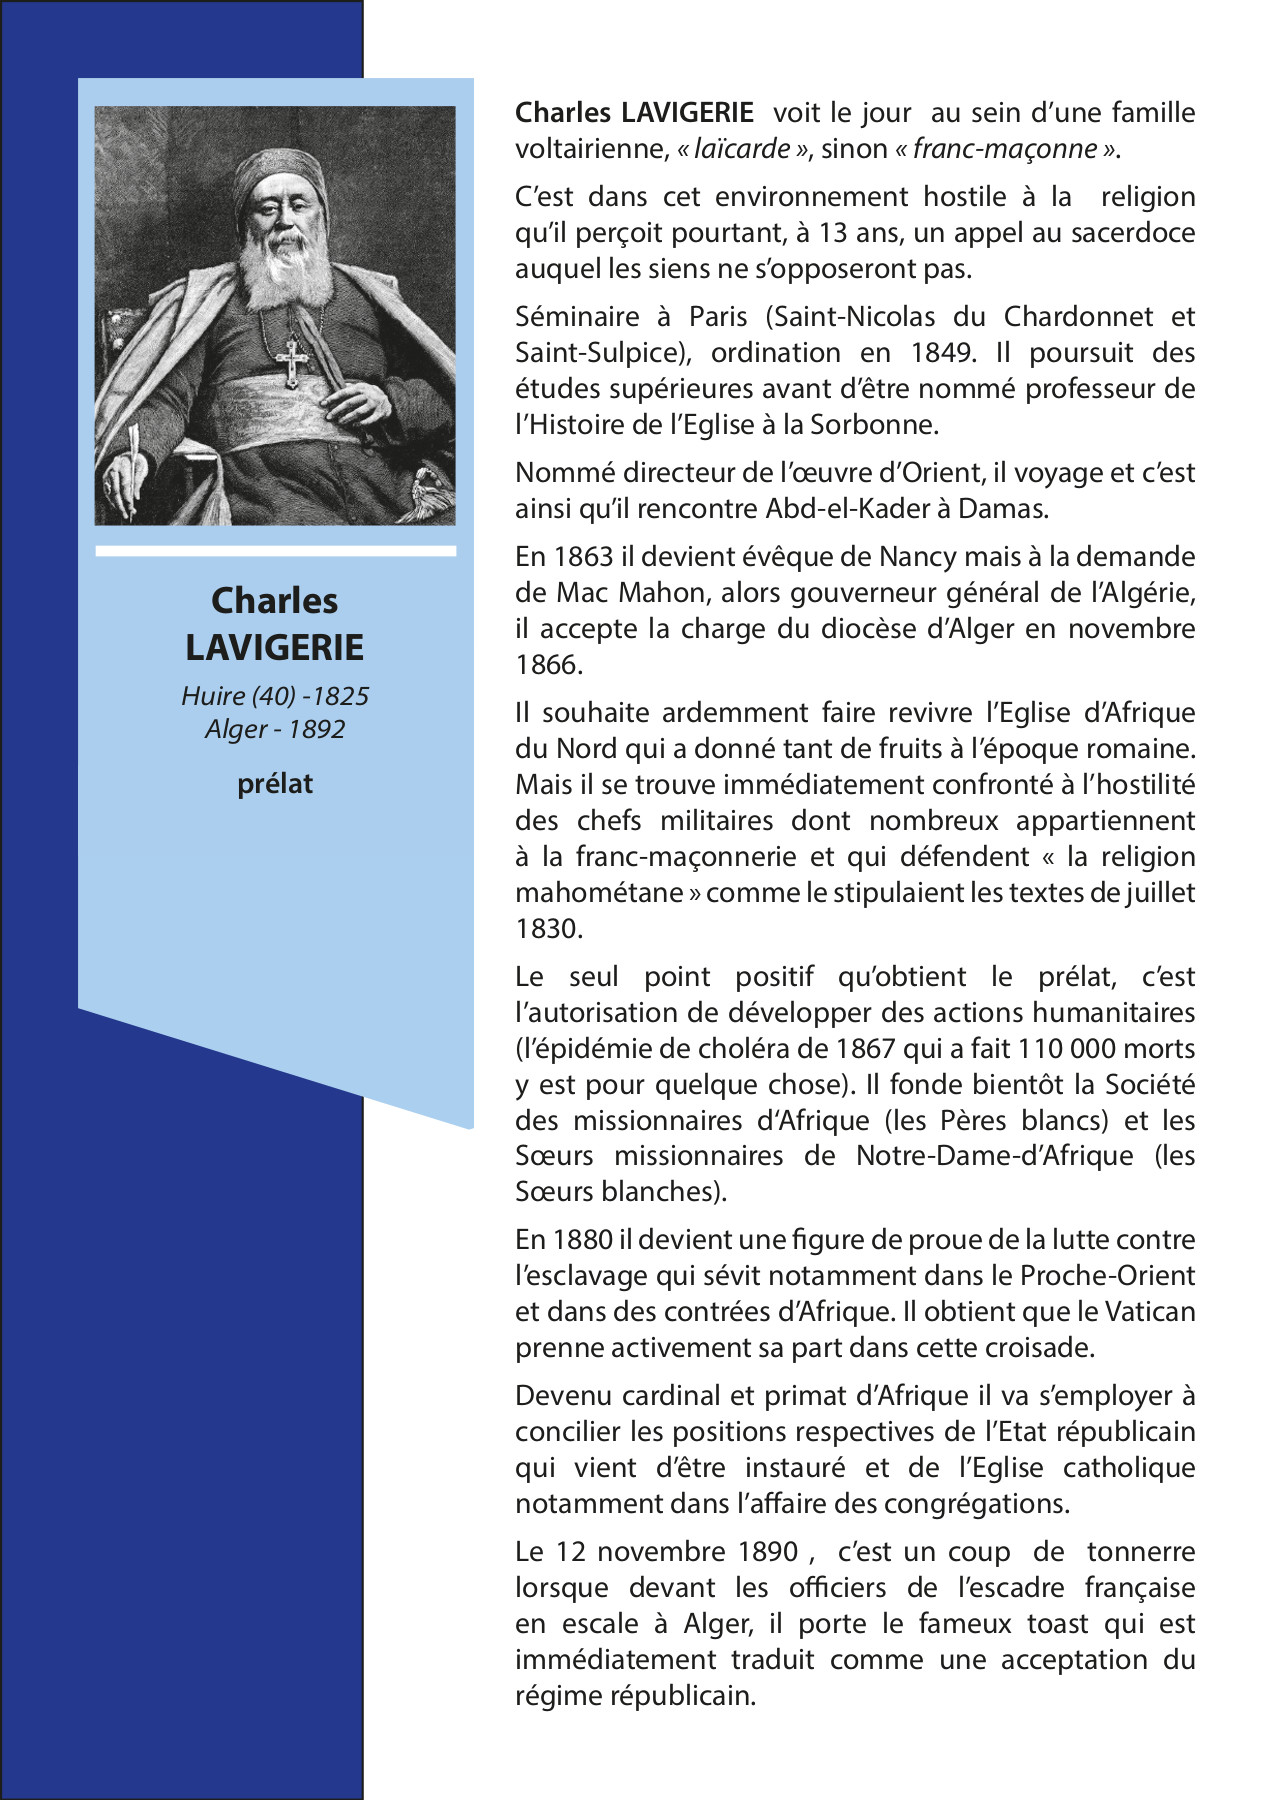 Charles LAVIGERIE Huire (40) -1825  Alger  - 1892 prélat Charles LAVIGERIE voit le  jour au sein d’une famille voltairienne,  «laïcarde», sinon «franc-maçonne».  C’est dans cet environnement hostile à  la religion qu’il perçoit pourtant, à 13  ans, un appel au sacerdoce auquel les  siens ne s’opposeront pas.  Séminaire à Paris (Saint-Nicolas du  Chardonnet et Saint-Sulpice), ordination  en 1849. Il poursuit des études  supérieures avant d’être nommé  professeur de l’Histoire de l’Eglise à  la Sorbonne. Nommé directeur de l’œuvre  d’Orient, il voyage et c’est ainsi qu’il  rencontre Abd-el-Kader à Damas. En 1863  il devient évêque de Nancy mais à la  demande de Mac Mahon, alors gouverneur  général de l’Algérie, il accepte la  charge du diocèse d’Alger en novembre  1866. Il souhaite ardemment faire  revivre l’Eglise d’Afrique du Nord qui a  donné tant de fruits à l’époque romaine.  Mais il se trouve immédiatement  confronté à l’hostilité des chefs  militaires dont nombreux appartiennent à  la franc-maçonnerie et qui défendent «  la religion mahométane » comme le  stipulaient les textes de juillet 1830.  Le seul point positif qu’obtient le  prélat, c’est l’autorisation de  développer des actions humanitaires  (l’épidémie de choléra de 1867 qui a  fait 110 000 morts y est pour quelque  chose). Il fonde bientôt la Société des  missionnaires d‘Afrique (les Pères  blancs) et les Sœurs missionnaires de  Notre-Dame-d’Afrique (les Sœurs  blanches). En 1880 il devient une figure  de proue de la lutte contre l’esclavage  qui sévit notamment dans le  Proche-Orient et dans des contrées  d’Afrique. Il obtient que le Vatican  prenne activement sa part dans cette  croisade. Devenu cardinal et primat  d’Afrique il va s’employer à concilier  les positions respectives de l’Etat  républicain qui vient d’être instauré et  de l’Eglise catholique notamment dans  l’affaire des congrégations. Le 12  novembre 1890 , c’est un coup de  tonnerre lorsque devant les officiers de  l’escadre  française en escale à Alger, il porte le  fameux toast qui est immédiatement  traduit comme une acceptation du régime  républicain.